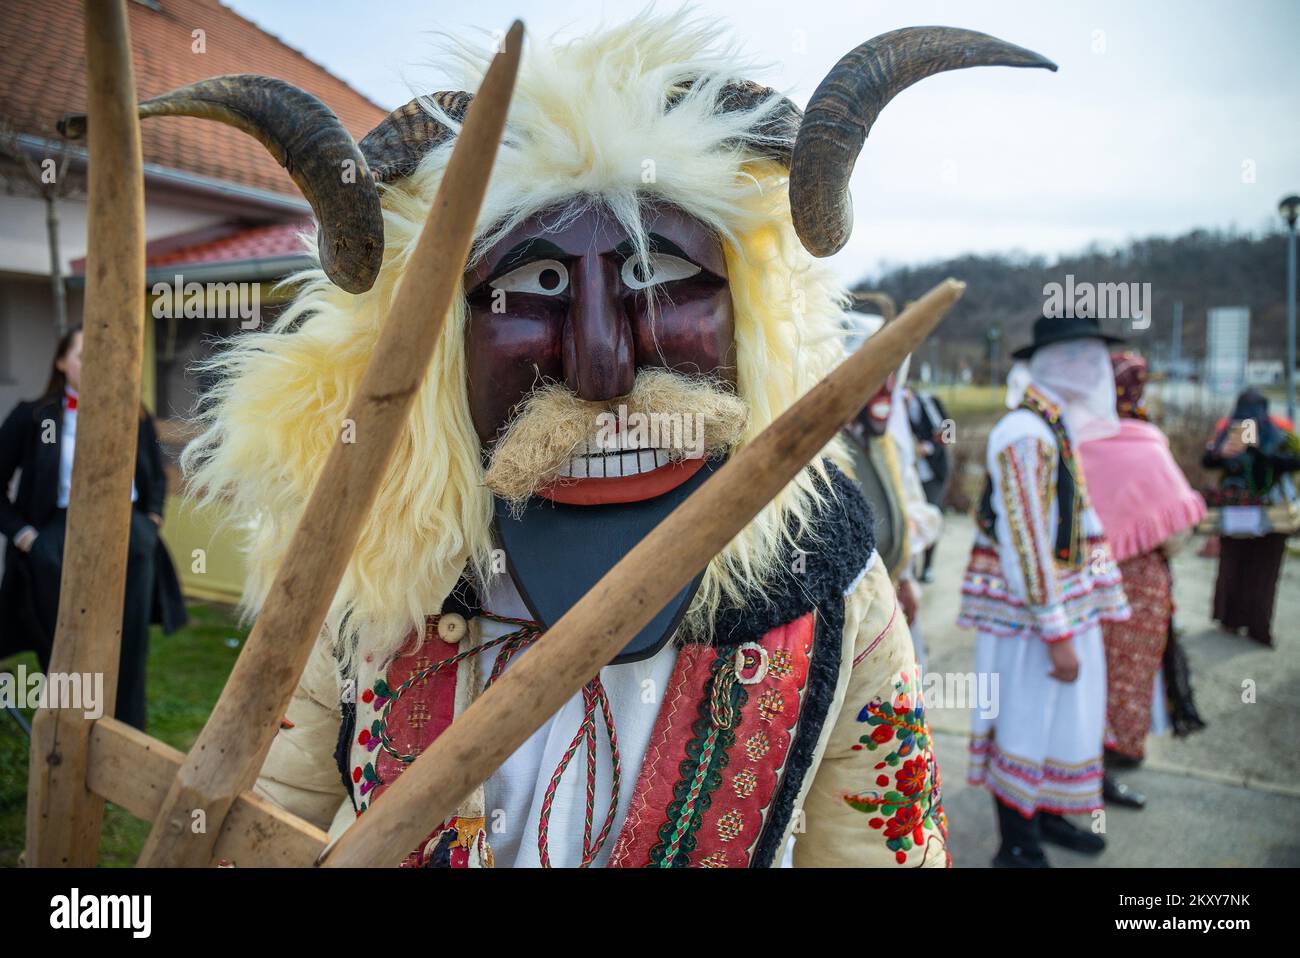 Una tradizionale processione carnevale si tenne nel villaggio di Draz, in  Croazia, il 26 febbraio 2022. Le antiche tradizioni carnevale di gruppi  mascherati chiamati â€œbuseâ€ che attraversano villaggi e case visitanti  sono